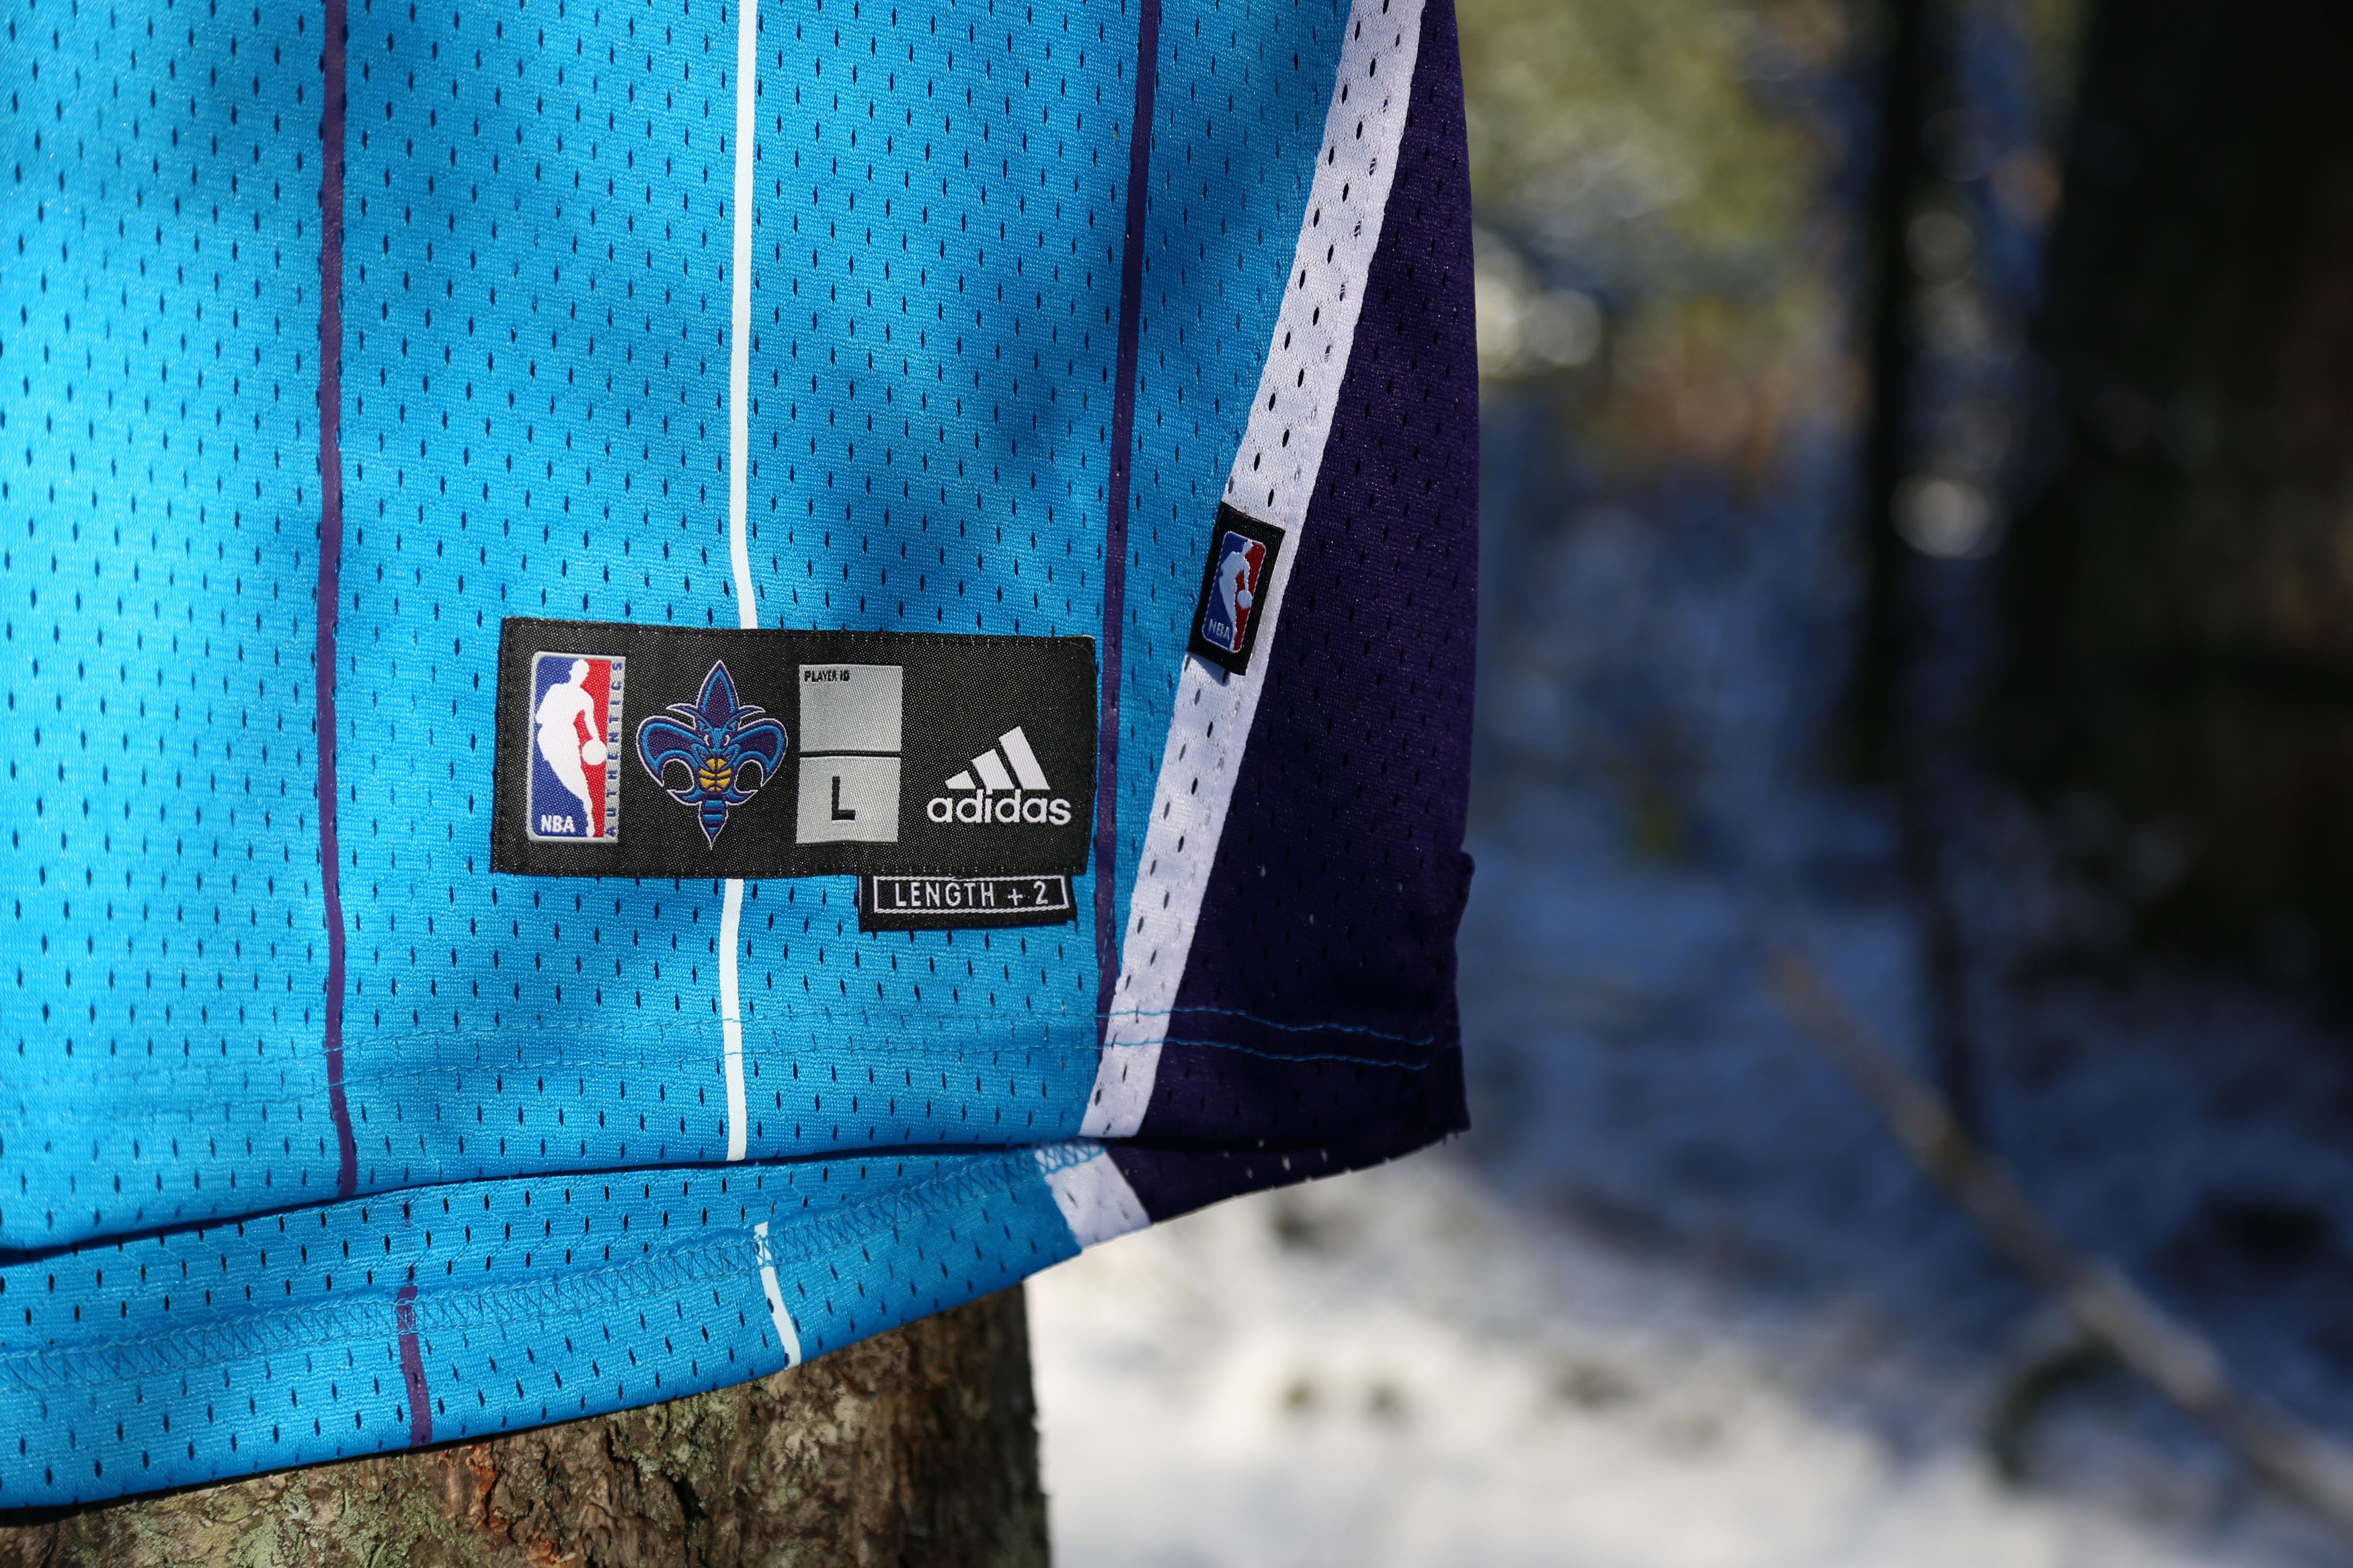 Adidas NBA x Adidas Chris Paul Jersey Size US L / EU 52-54 / 3 - 3 Thumbnail